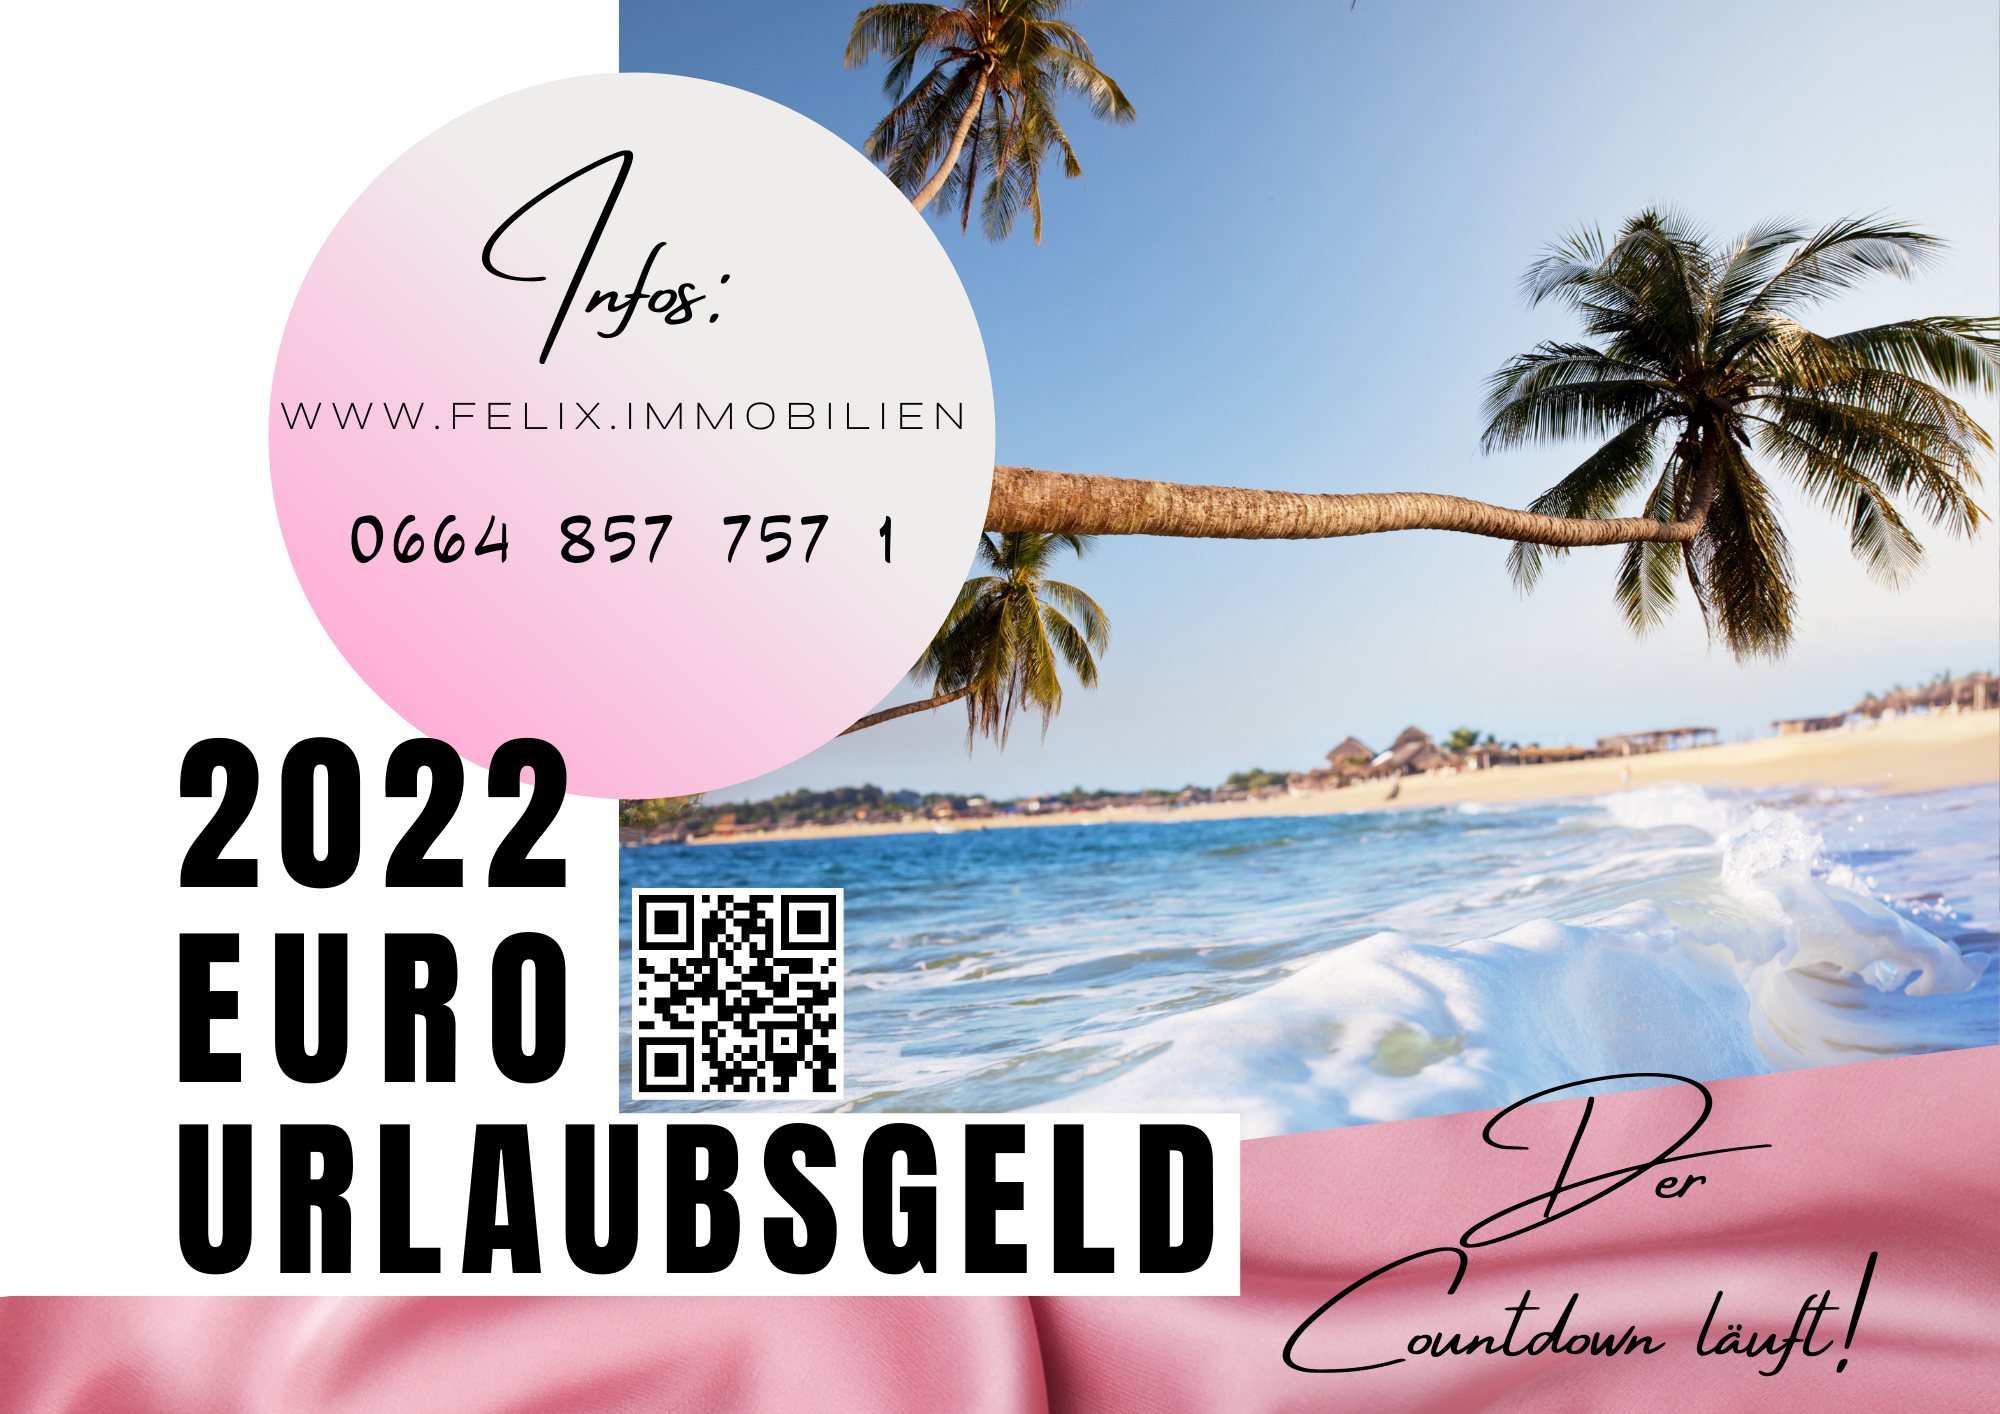 Grafik: Palme am Strand mit Werbung für Verlosung des Urlaubsgeldes